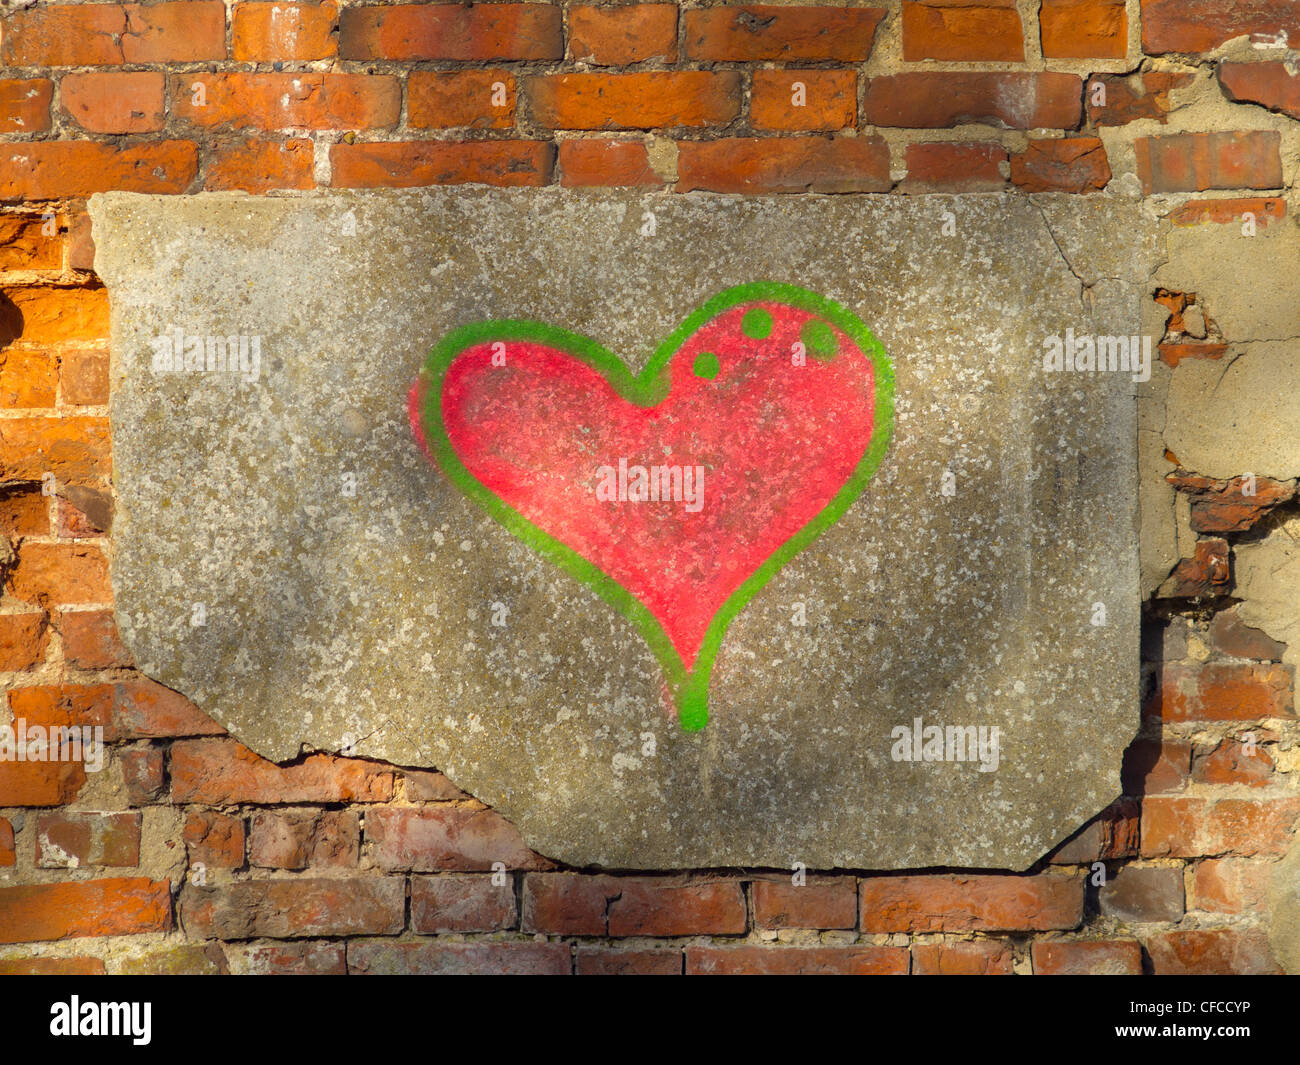 Eine rote Herz-Form, die auf einer alten Mauer gesprühte wurde. Stockfoto